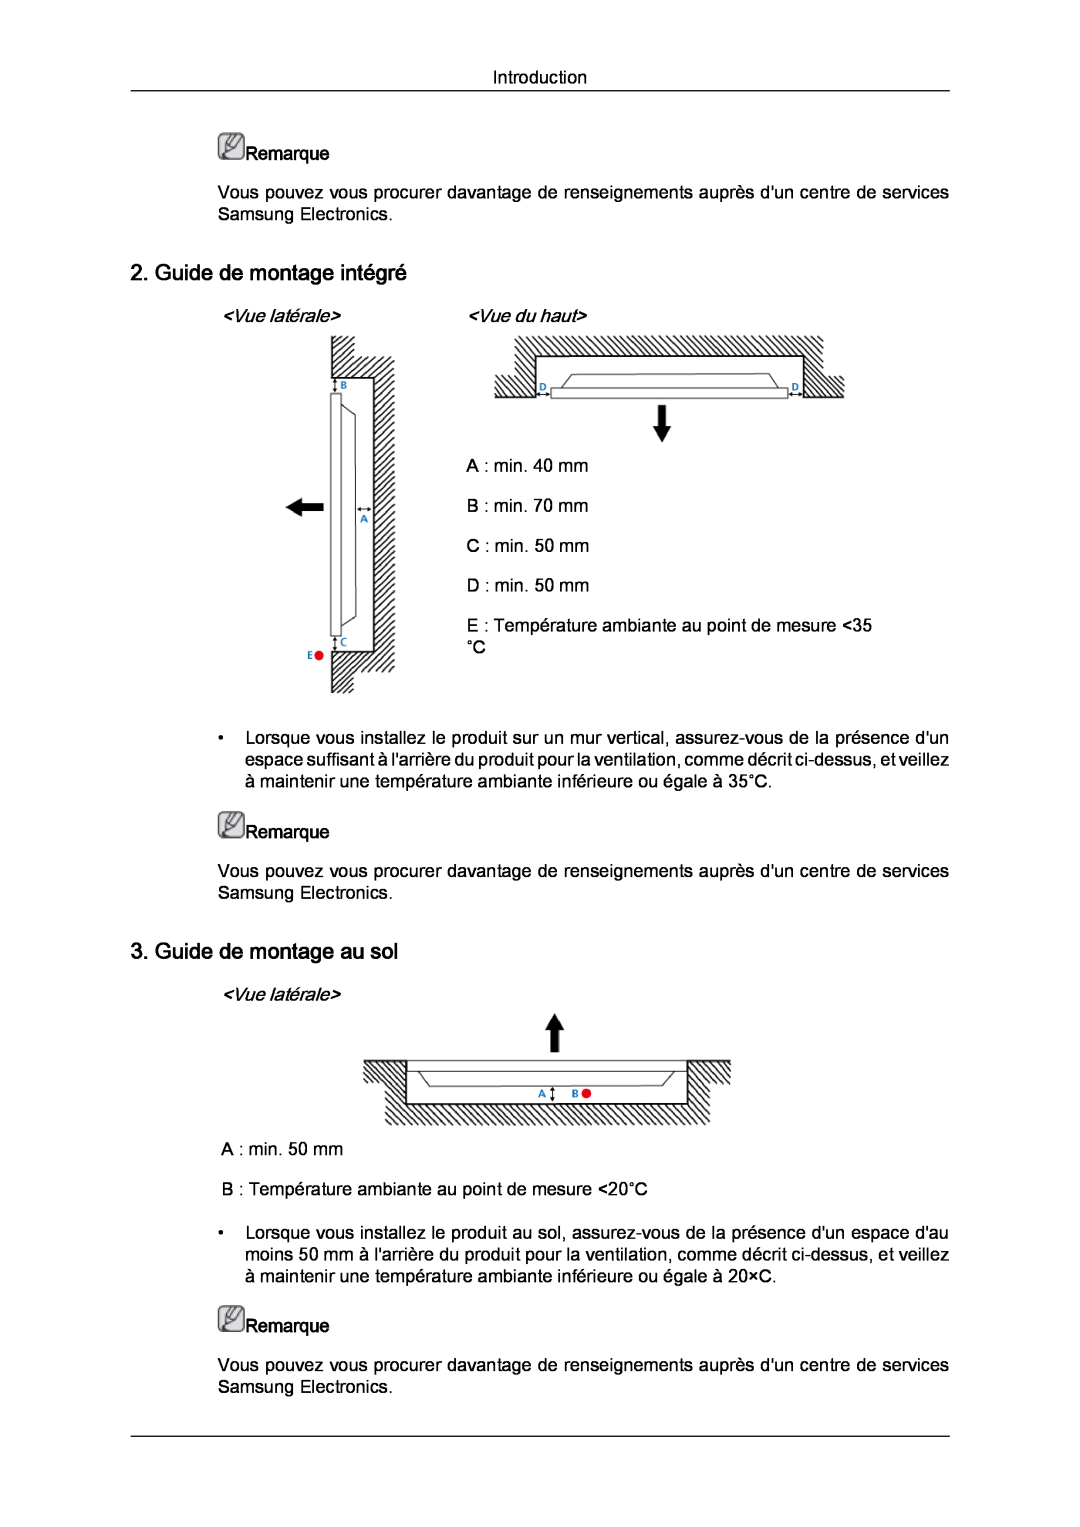 Samsung LH40CRPMBC/EN manual Guide de montage intégré, Guide de montage au sol, Vue du haut, Remarque, Vue latérale 